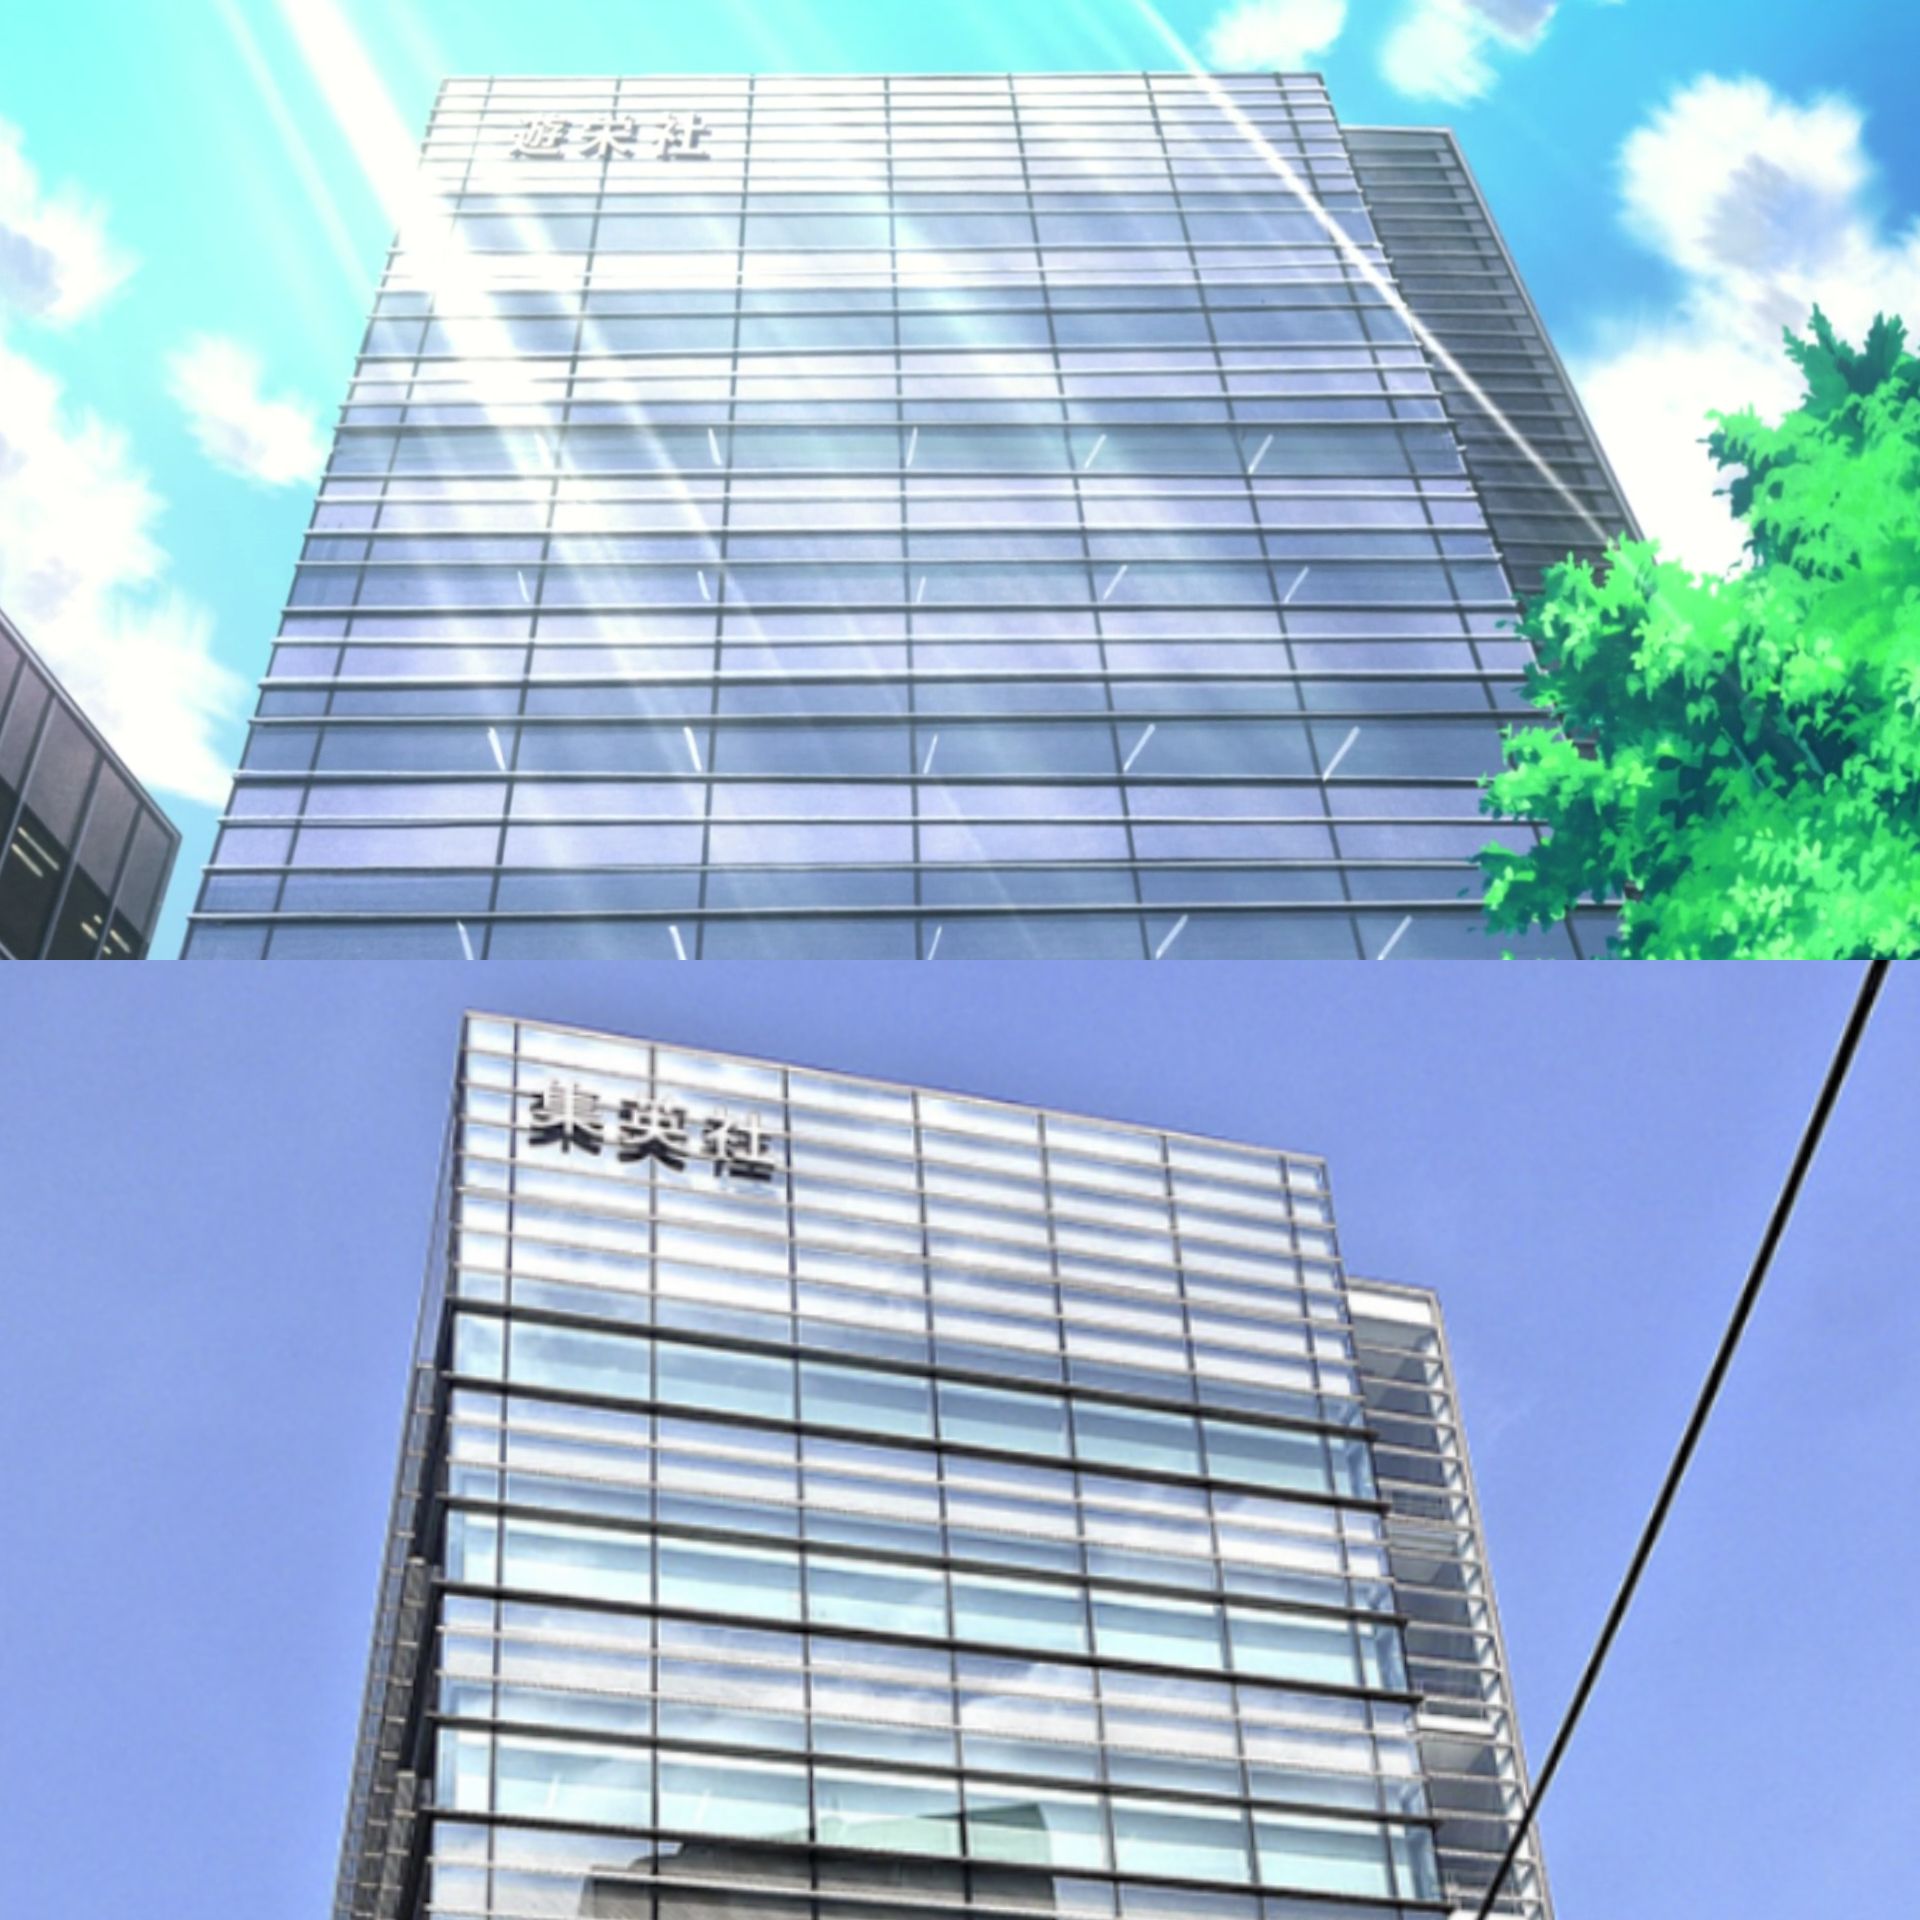 Офис издательства Shueisha в аниме и реальности